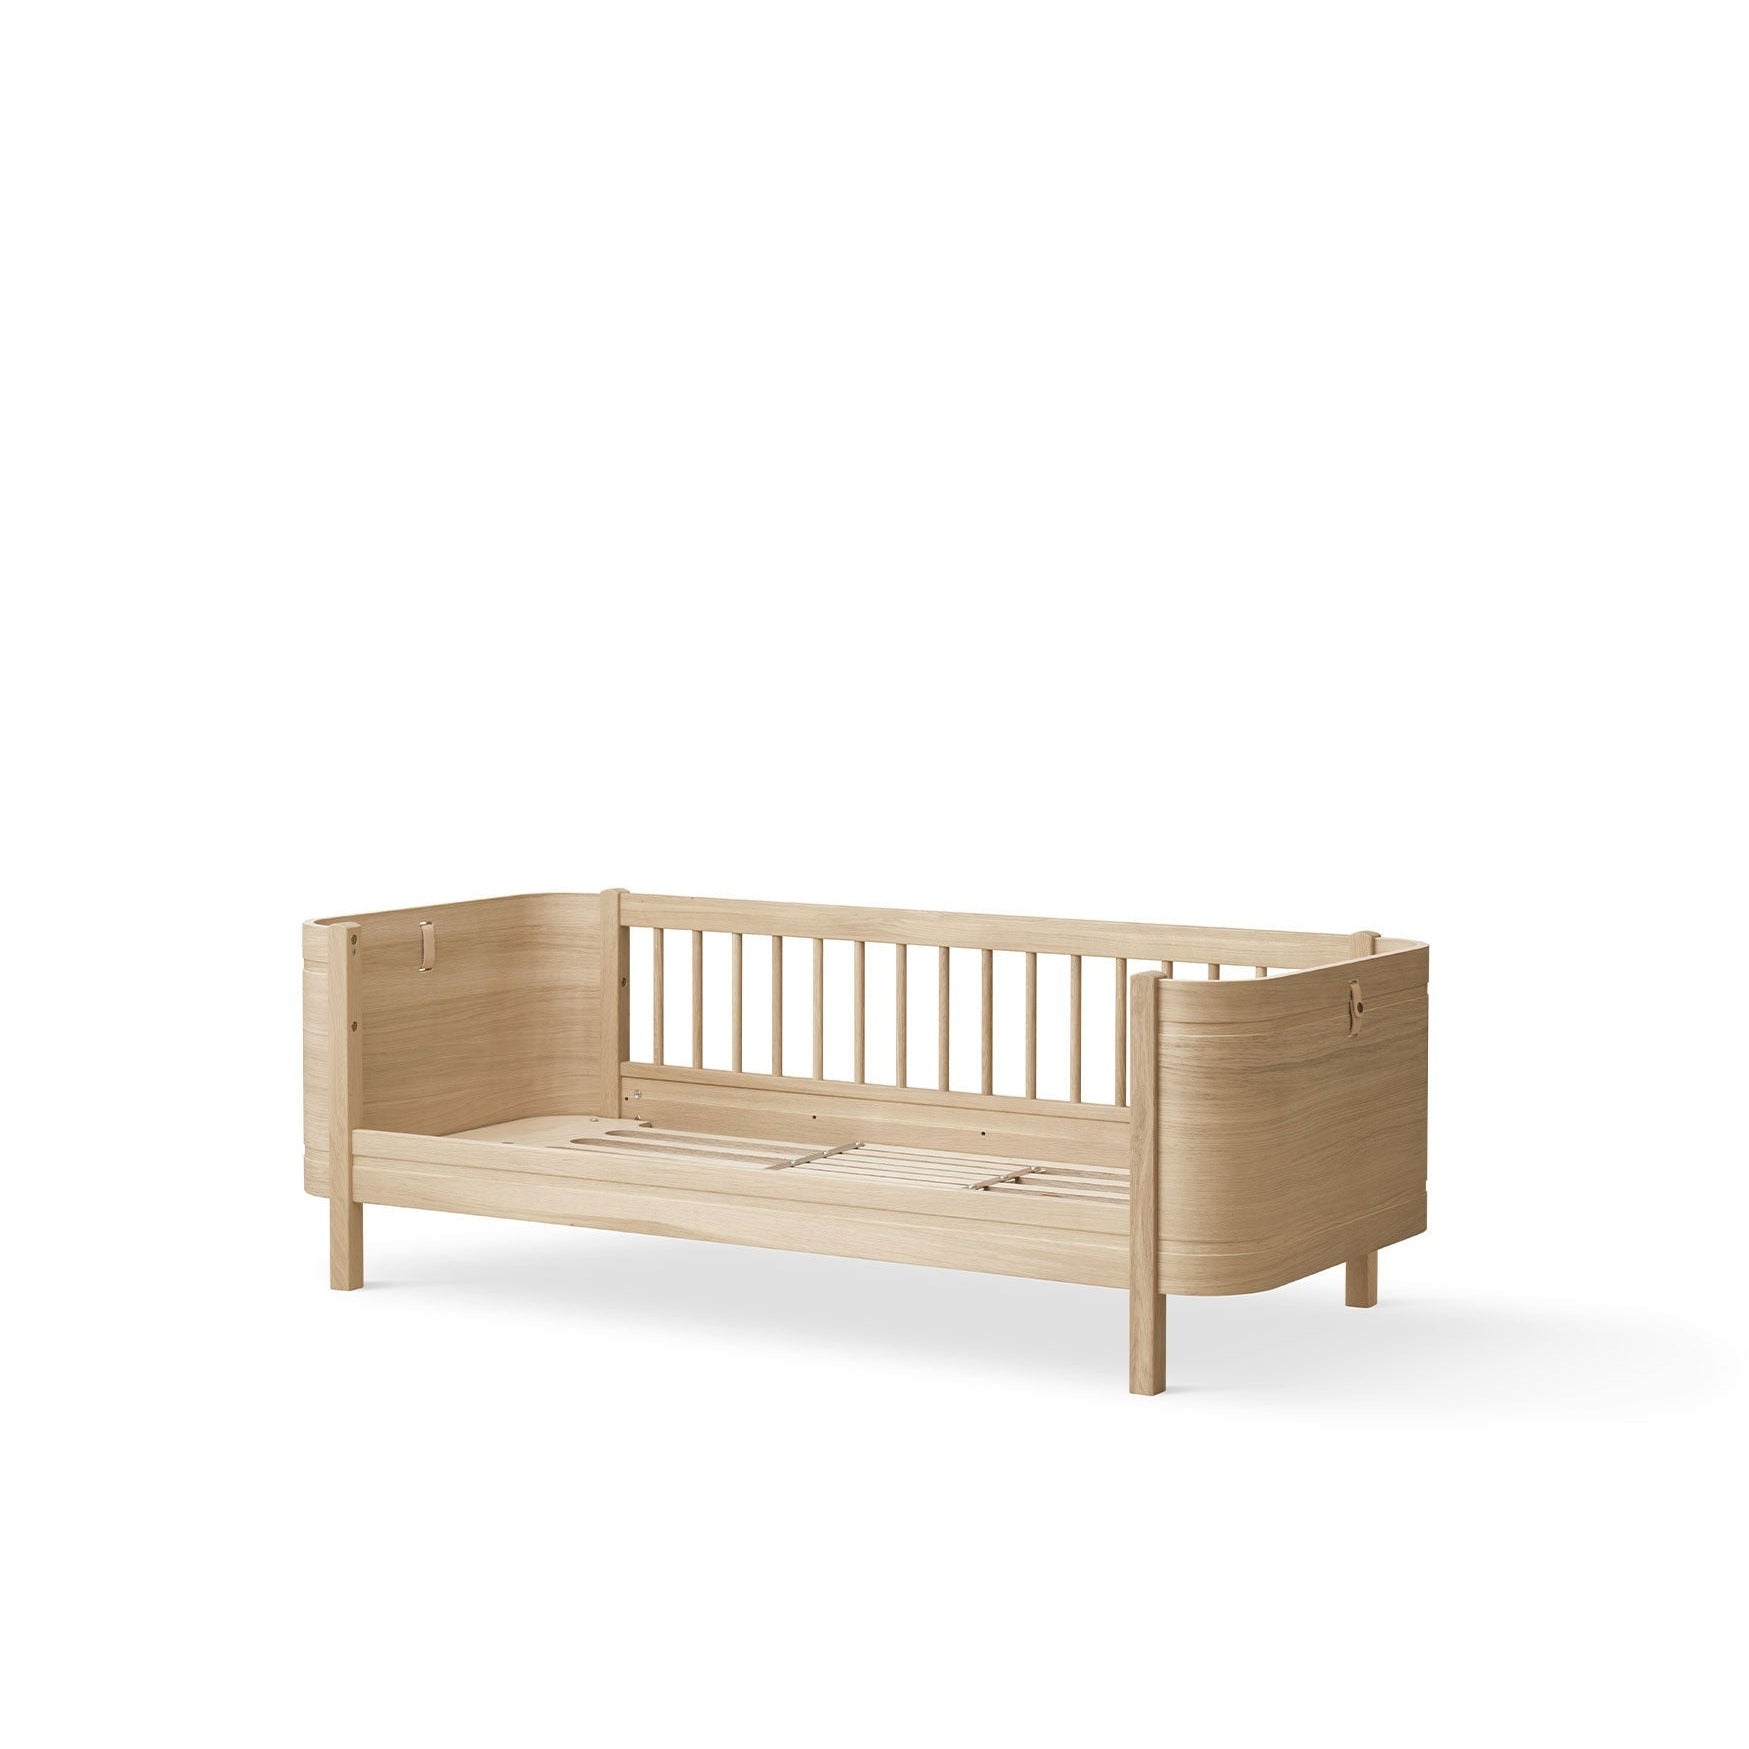 Hamaca balancín bebés Wood x Oliver Furniture. Hamacas infantiles